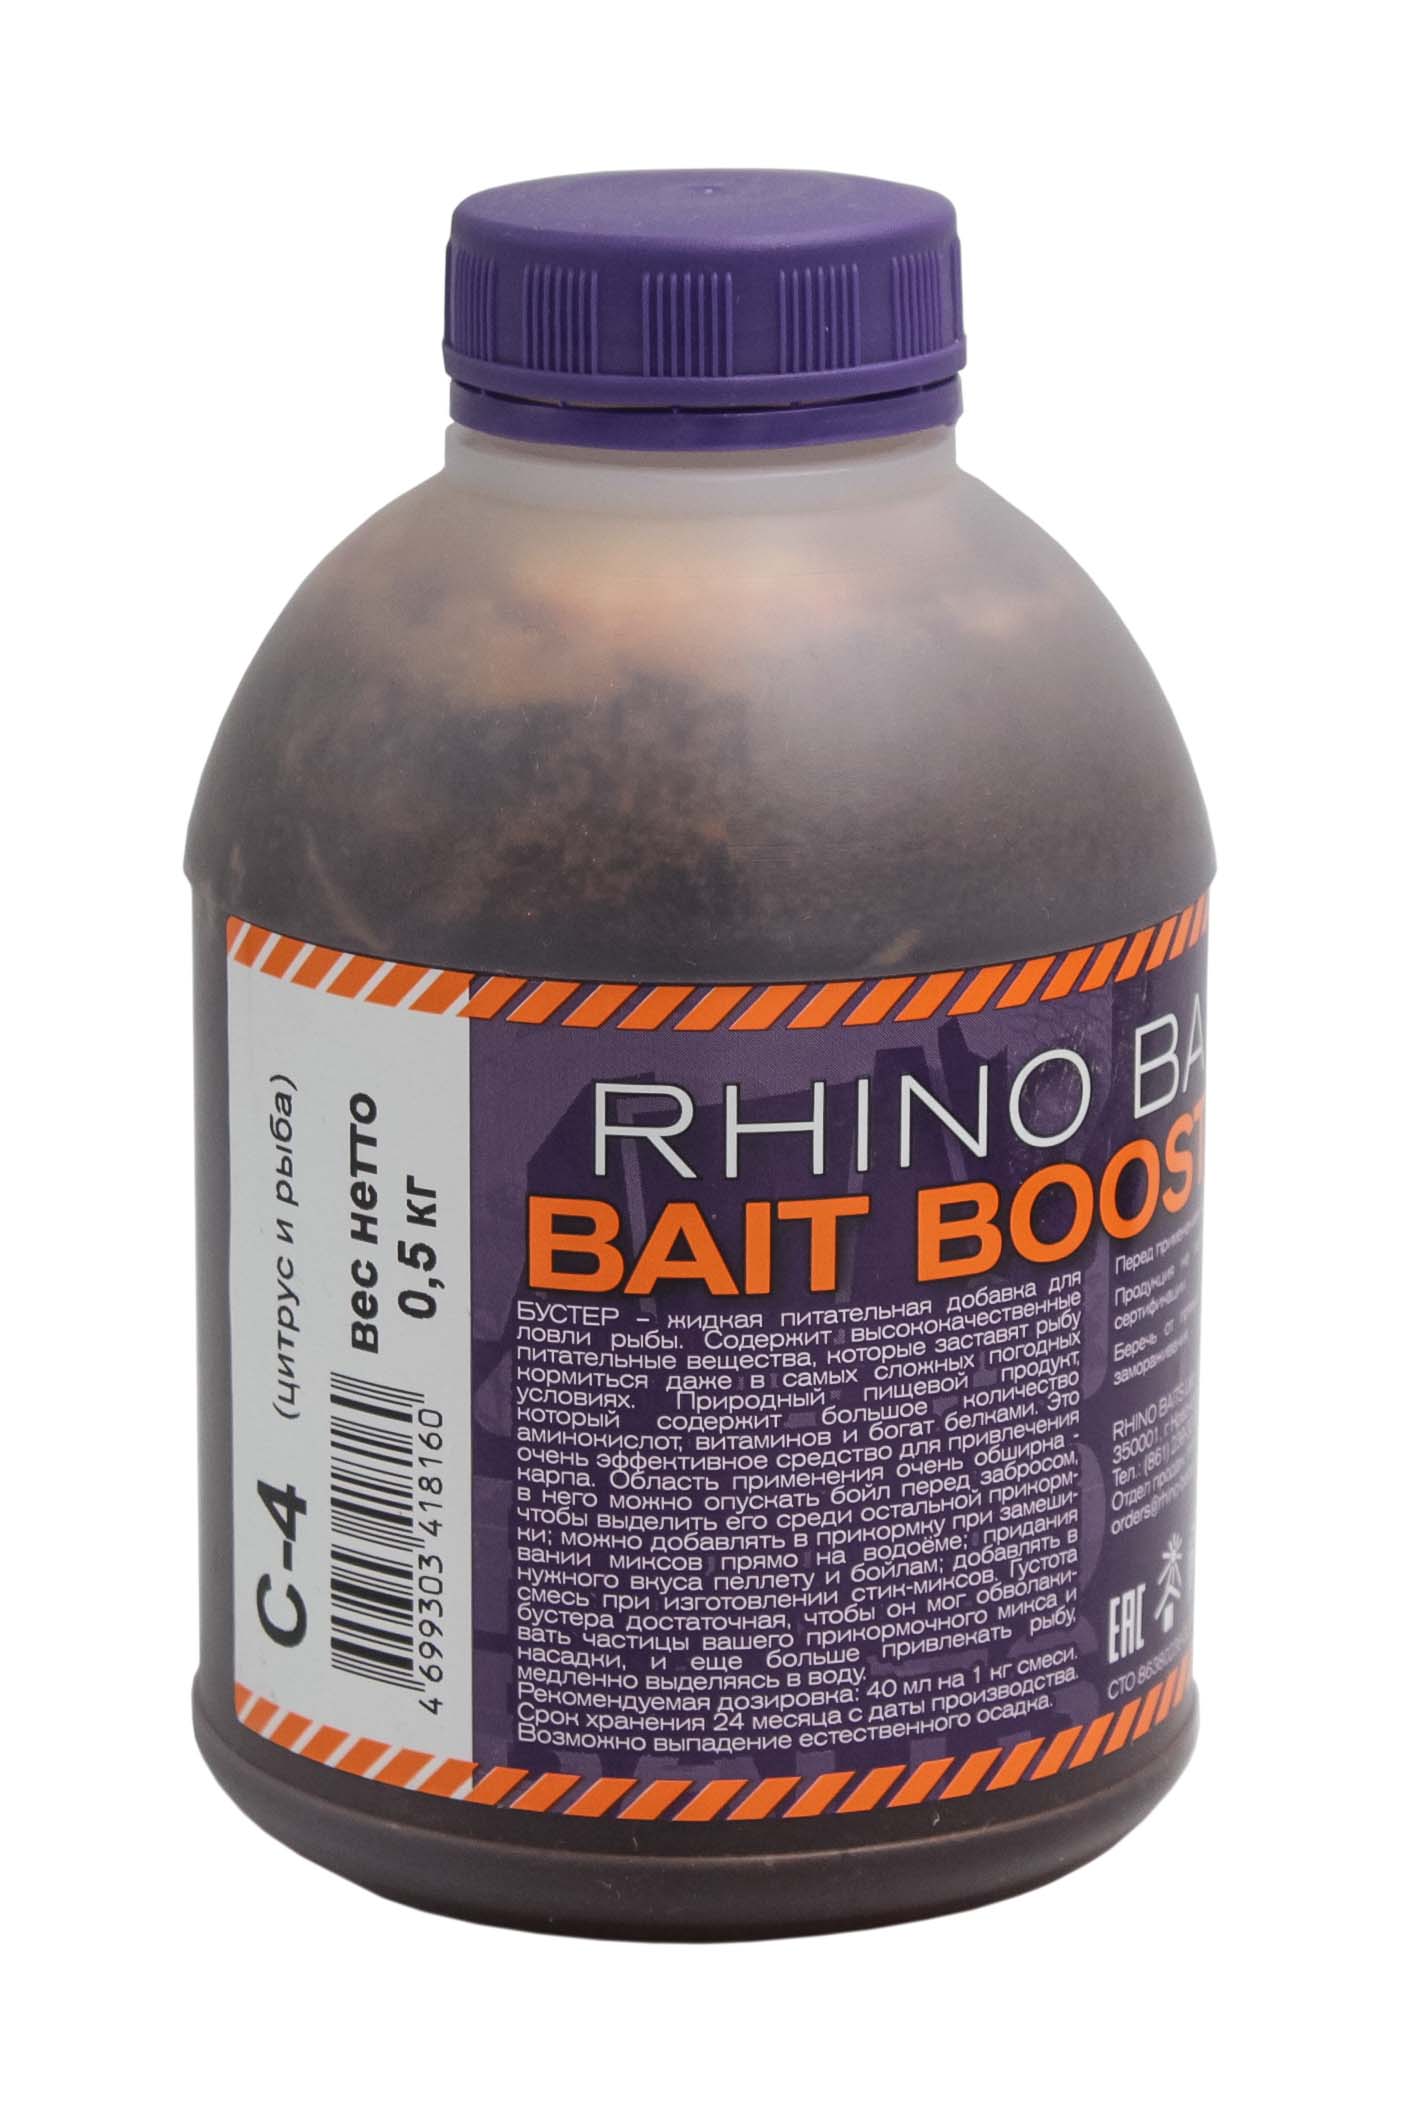 Ликвид Rhino Baits Bait booster food C-4 цитрус и рыба 500мл - фото 1